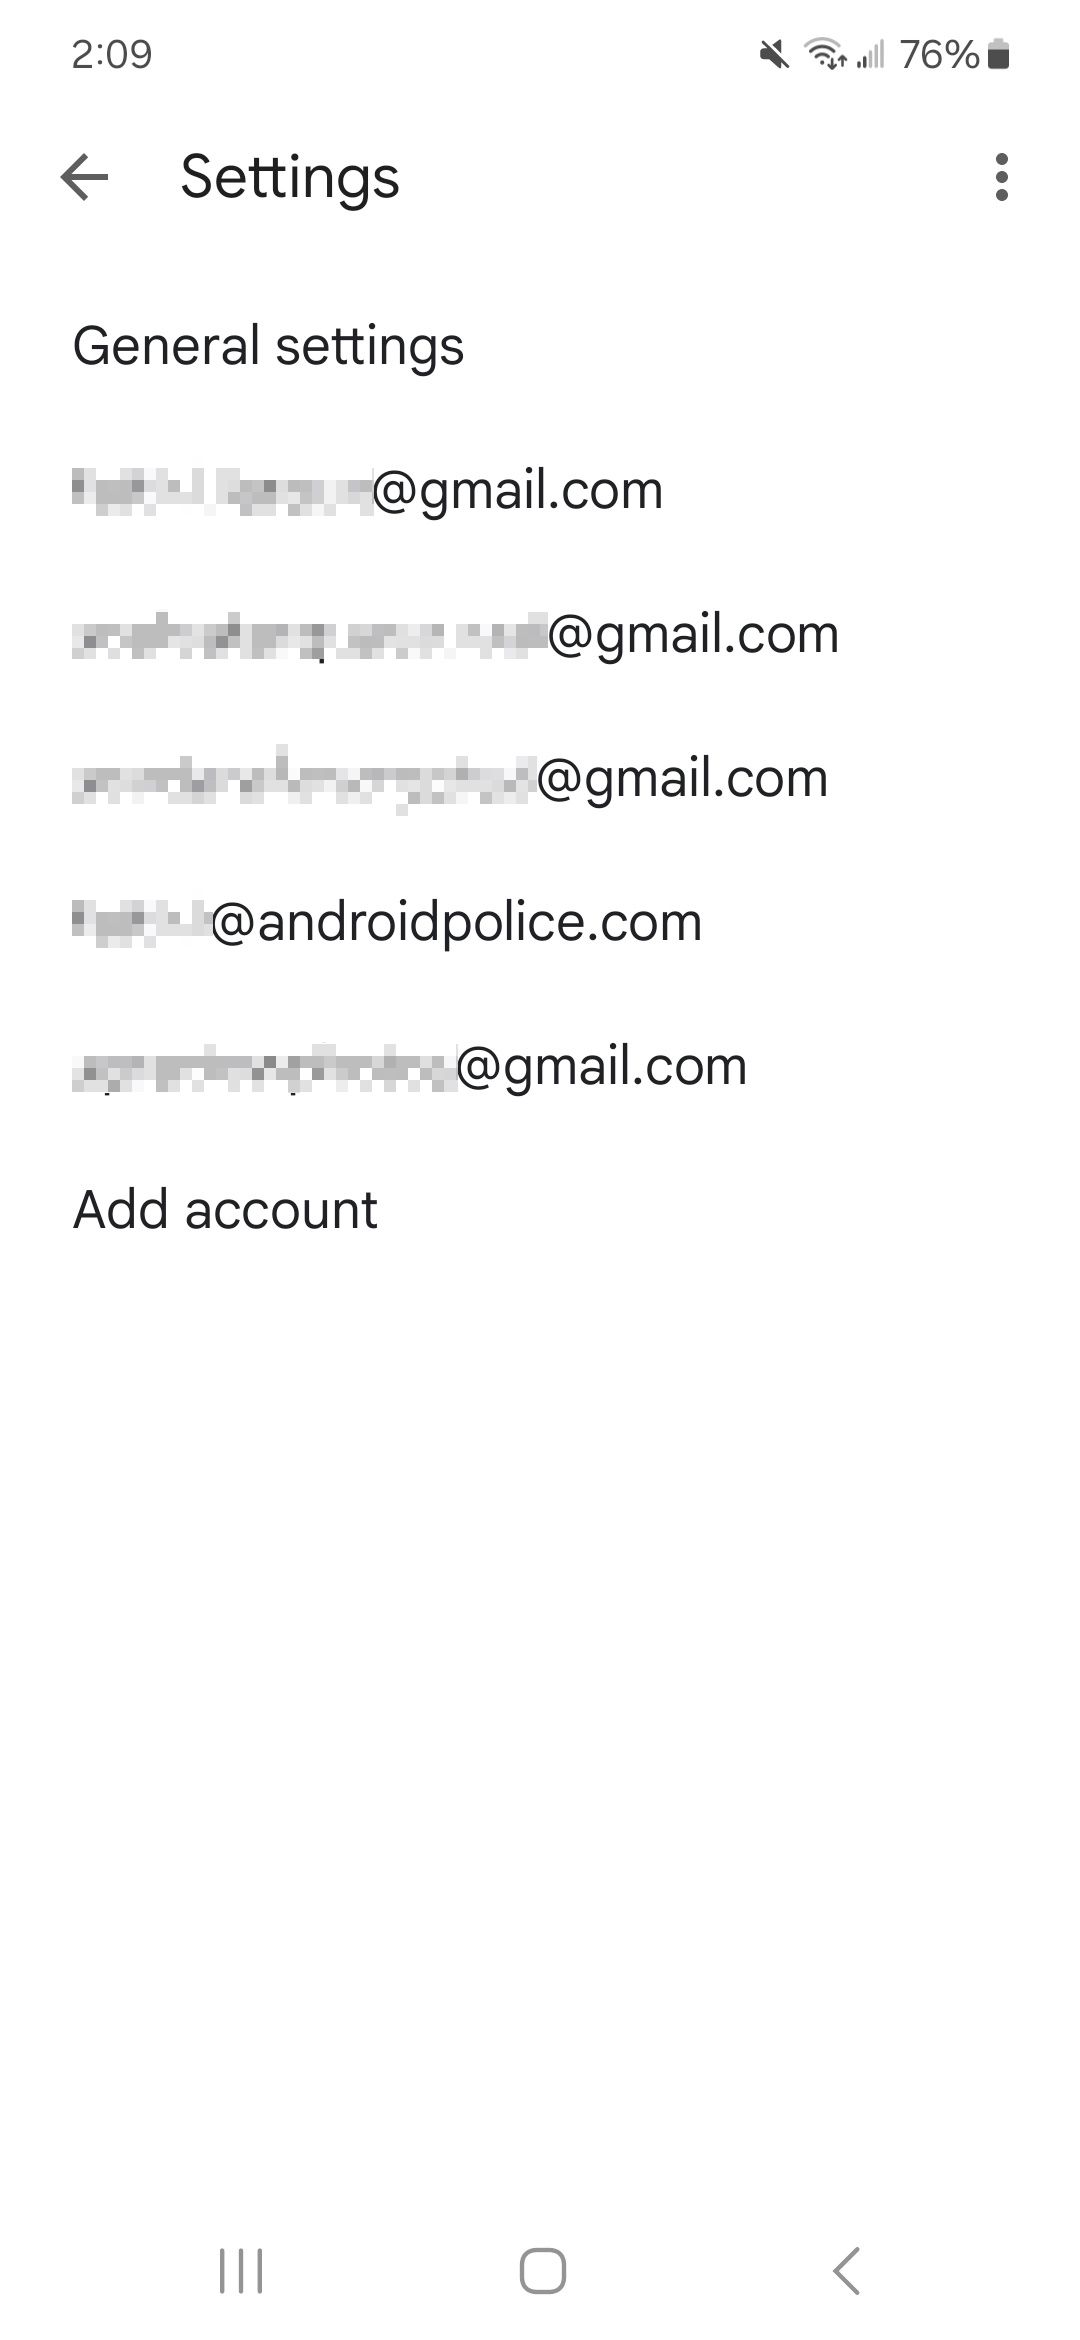 Daftar alamat email yang terhubung ke aplikasi Gmail di bawah pengaturan